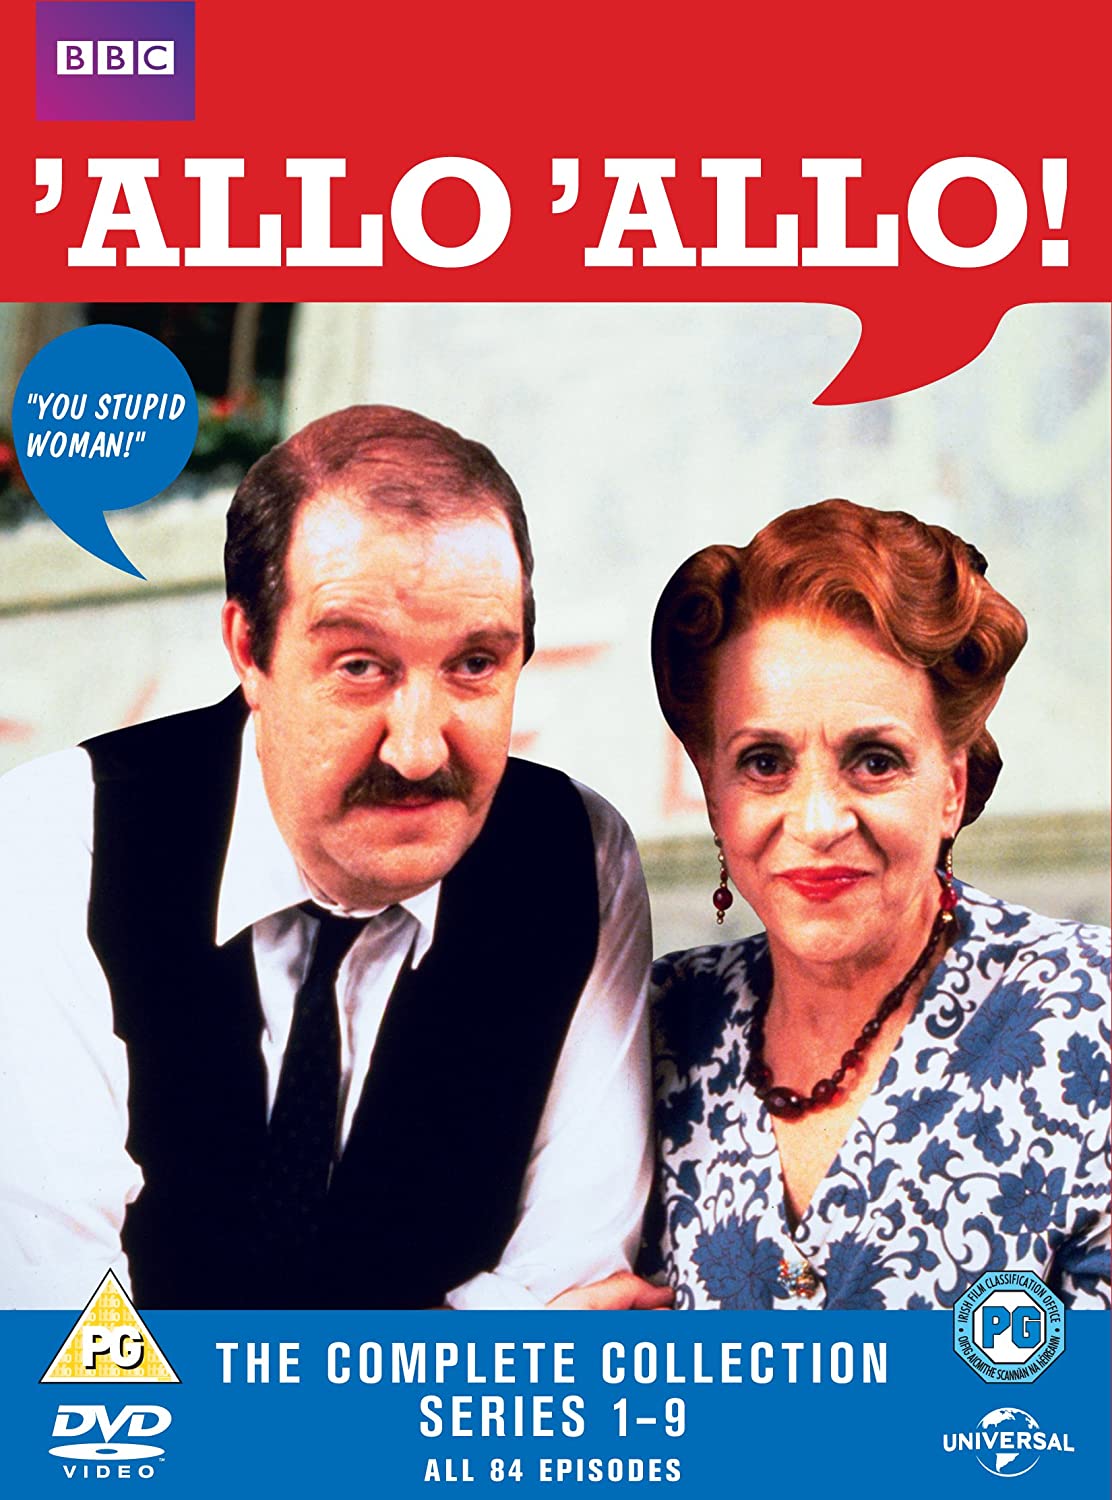 Allo 'Allo: The Complete Series (BBC) (DVD)